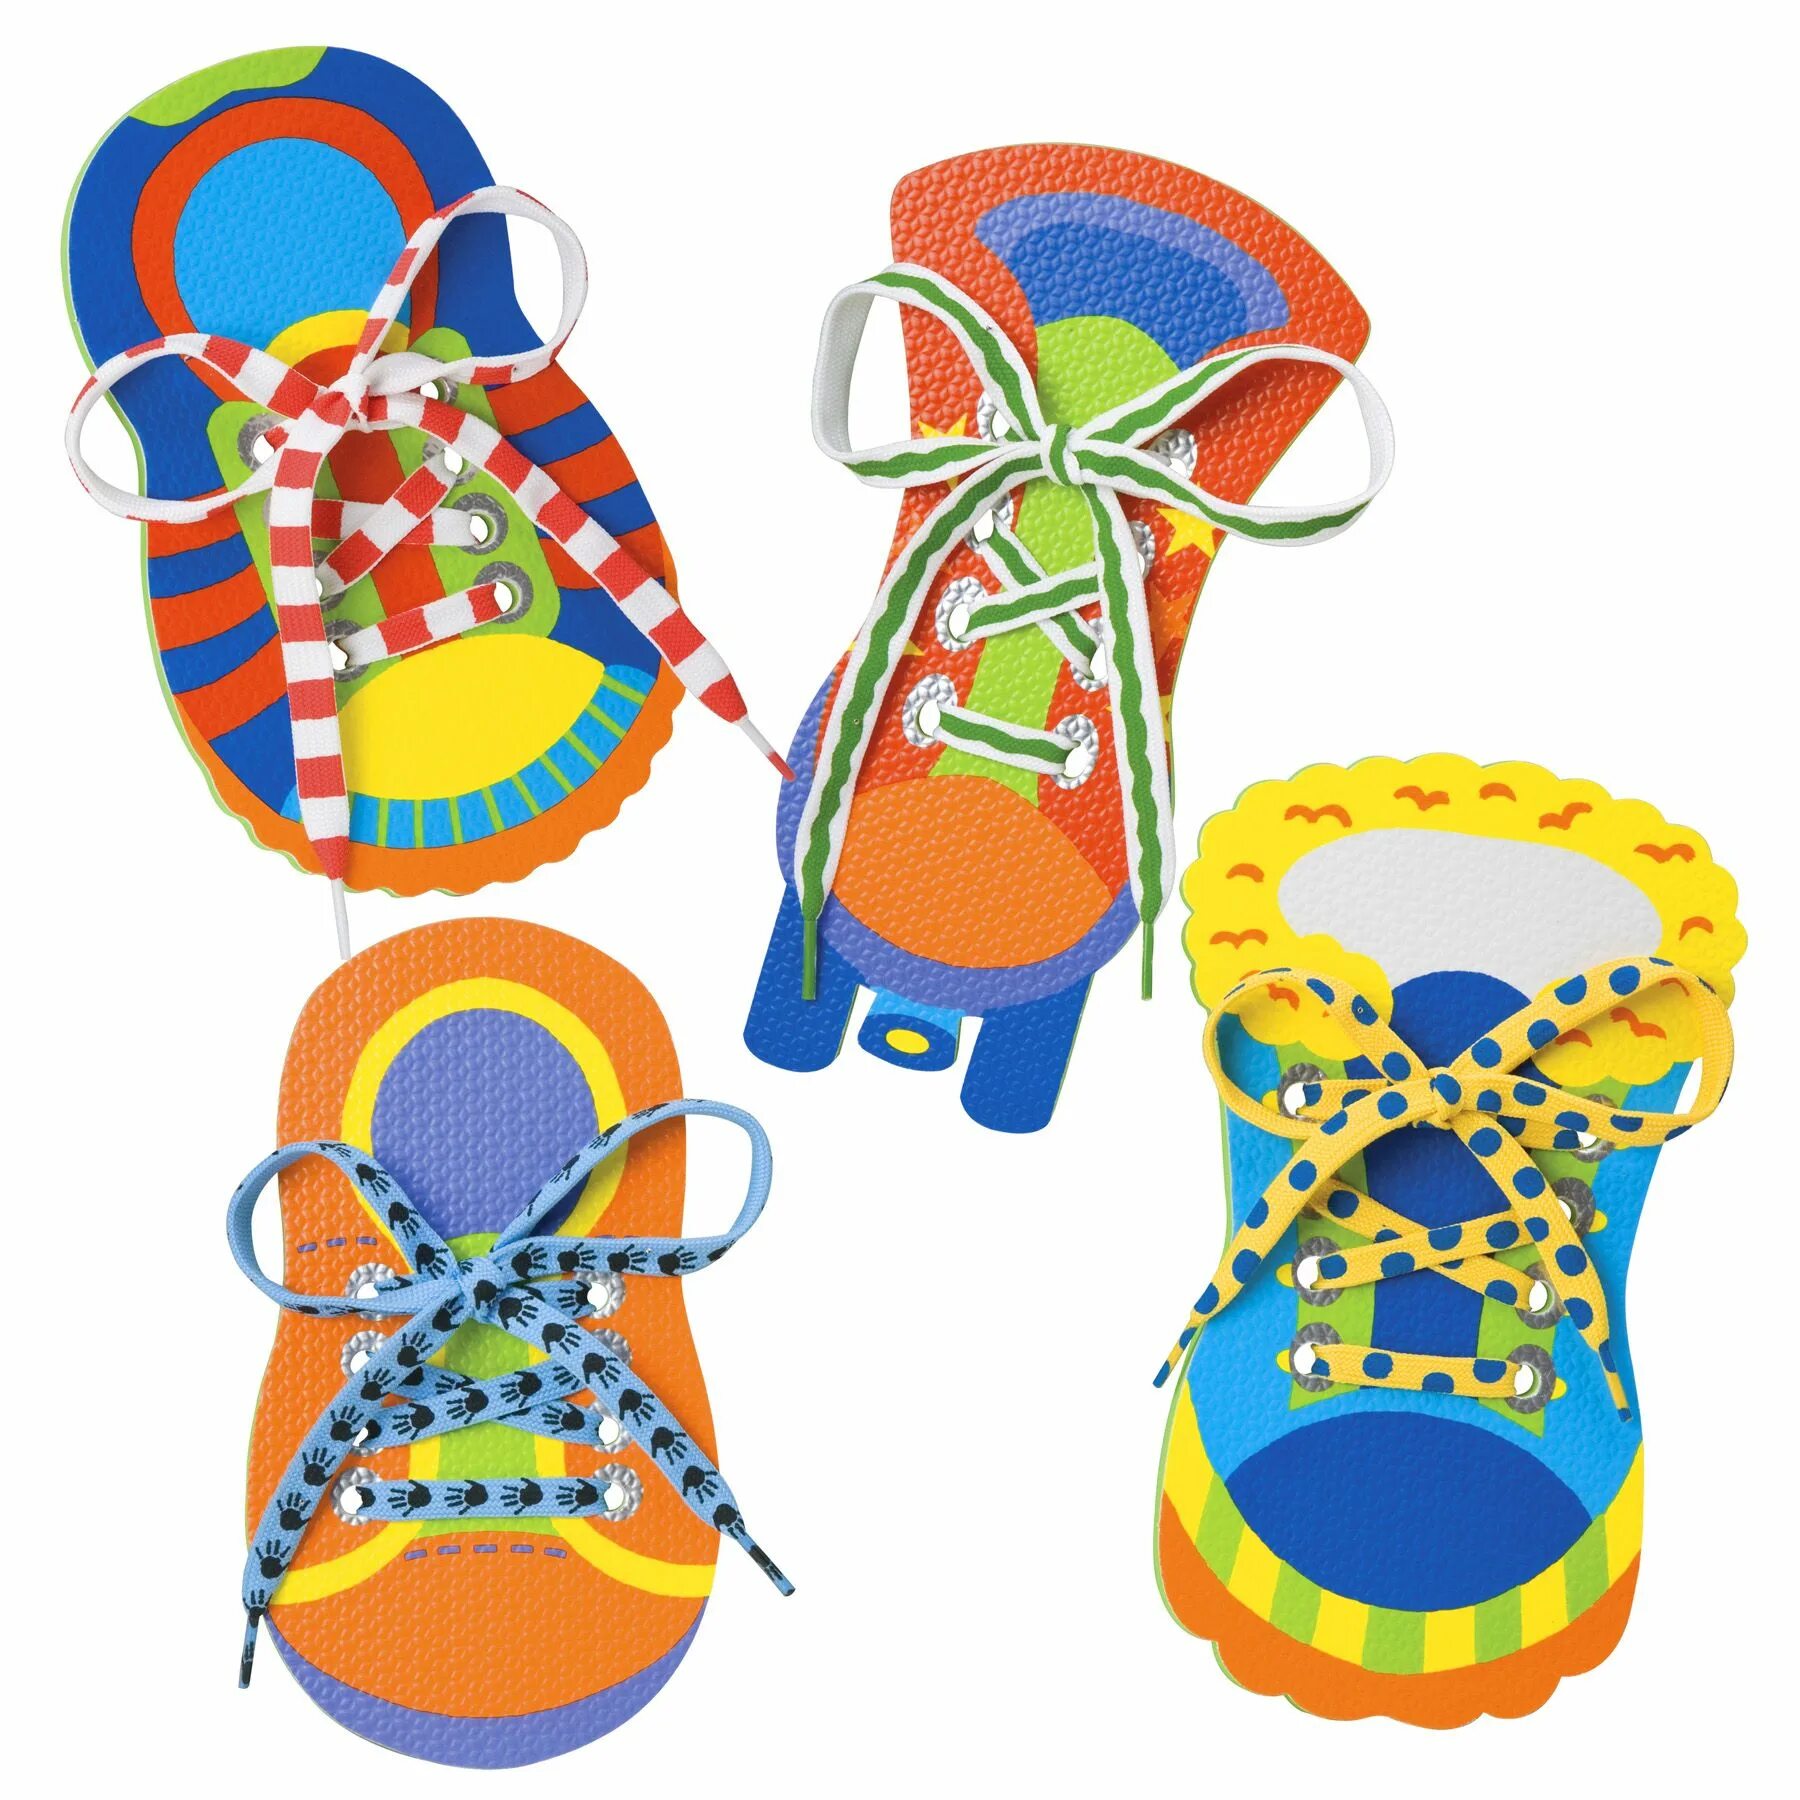 Развивающая шнуровка. Шнуровки детские. Шнуровка развивающая игрушка. Ботинок шнуровка для детей. Шнуровка обуви для детей.